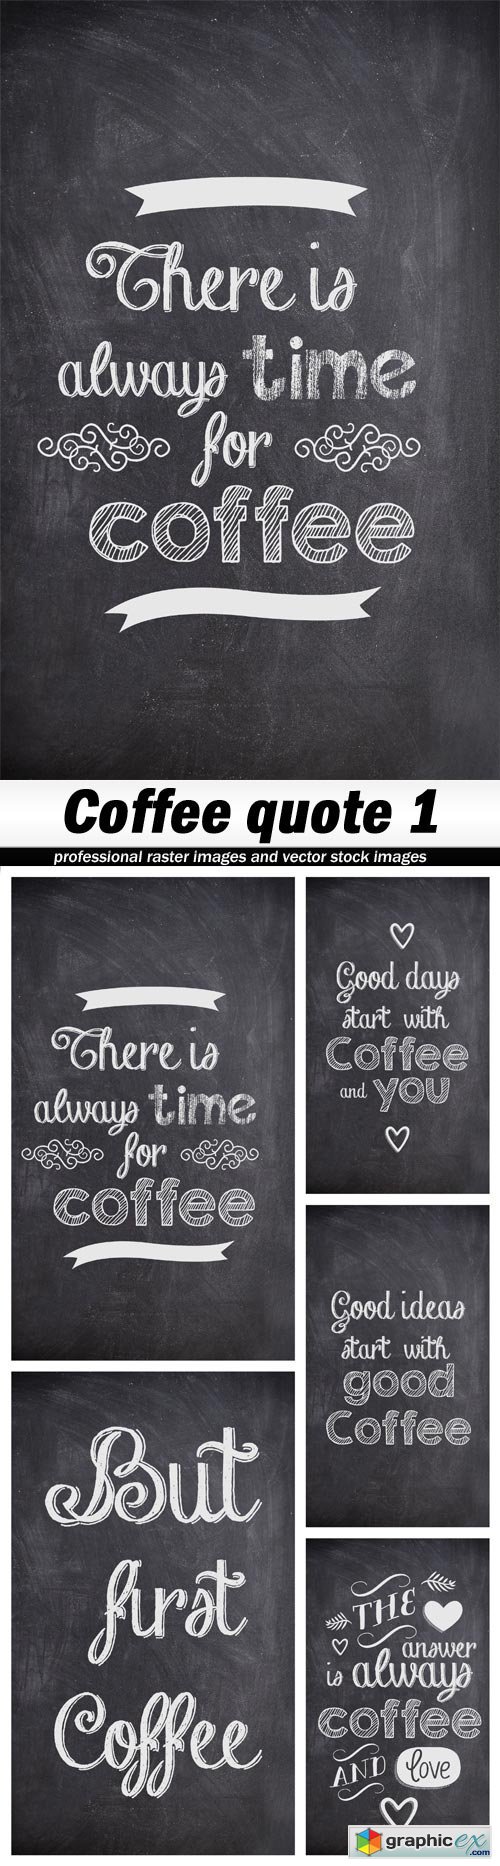 Coffee quote 1 - 5 UHQ JPEG